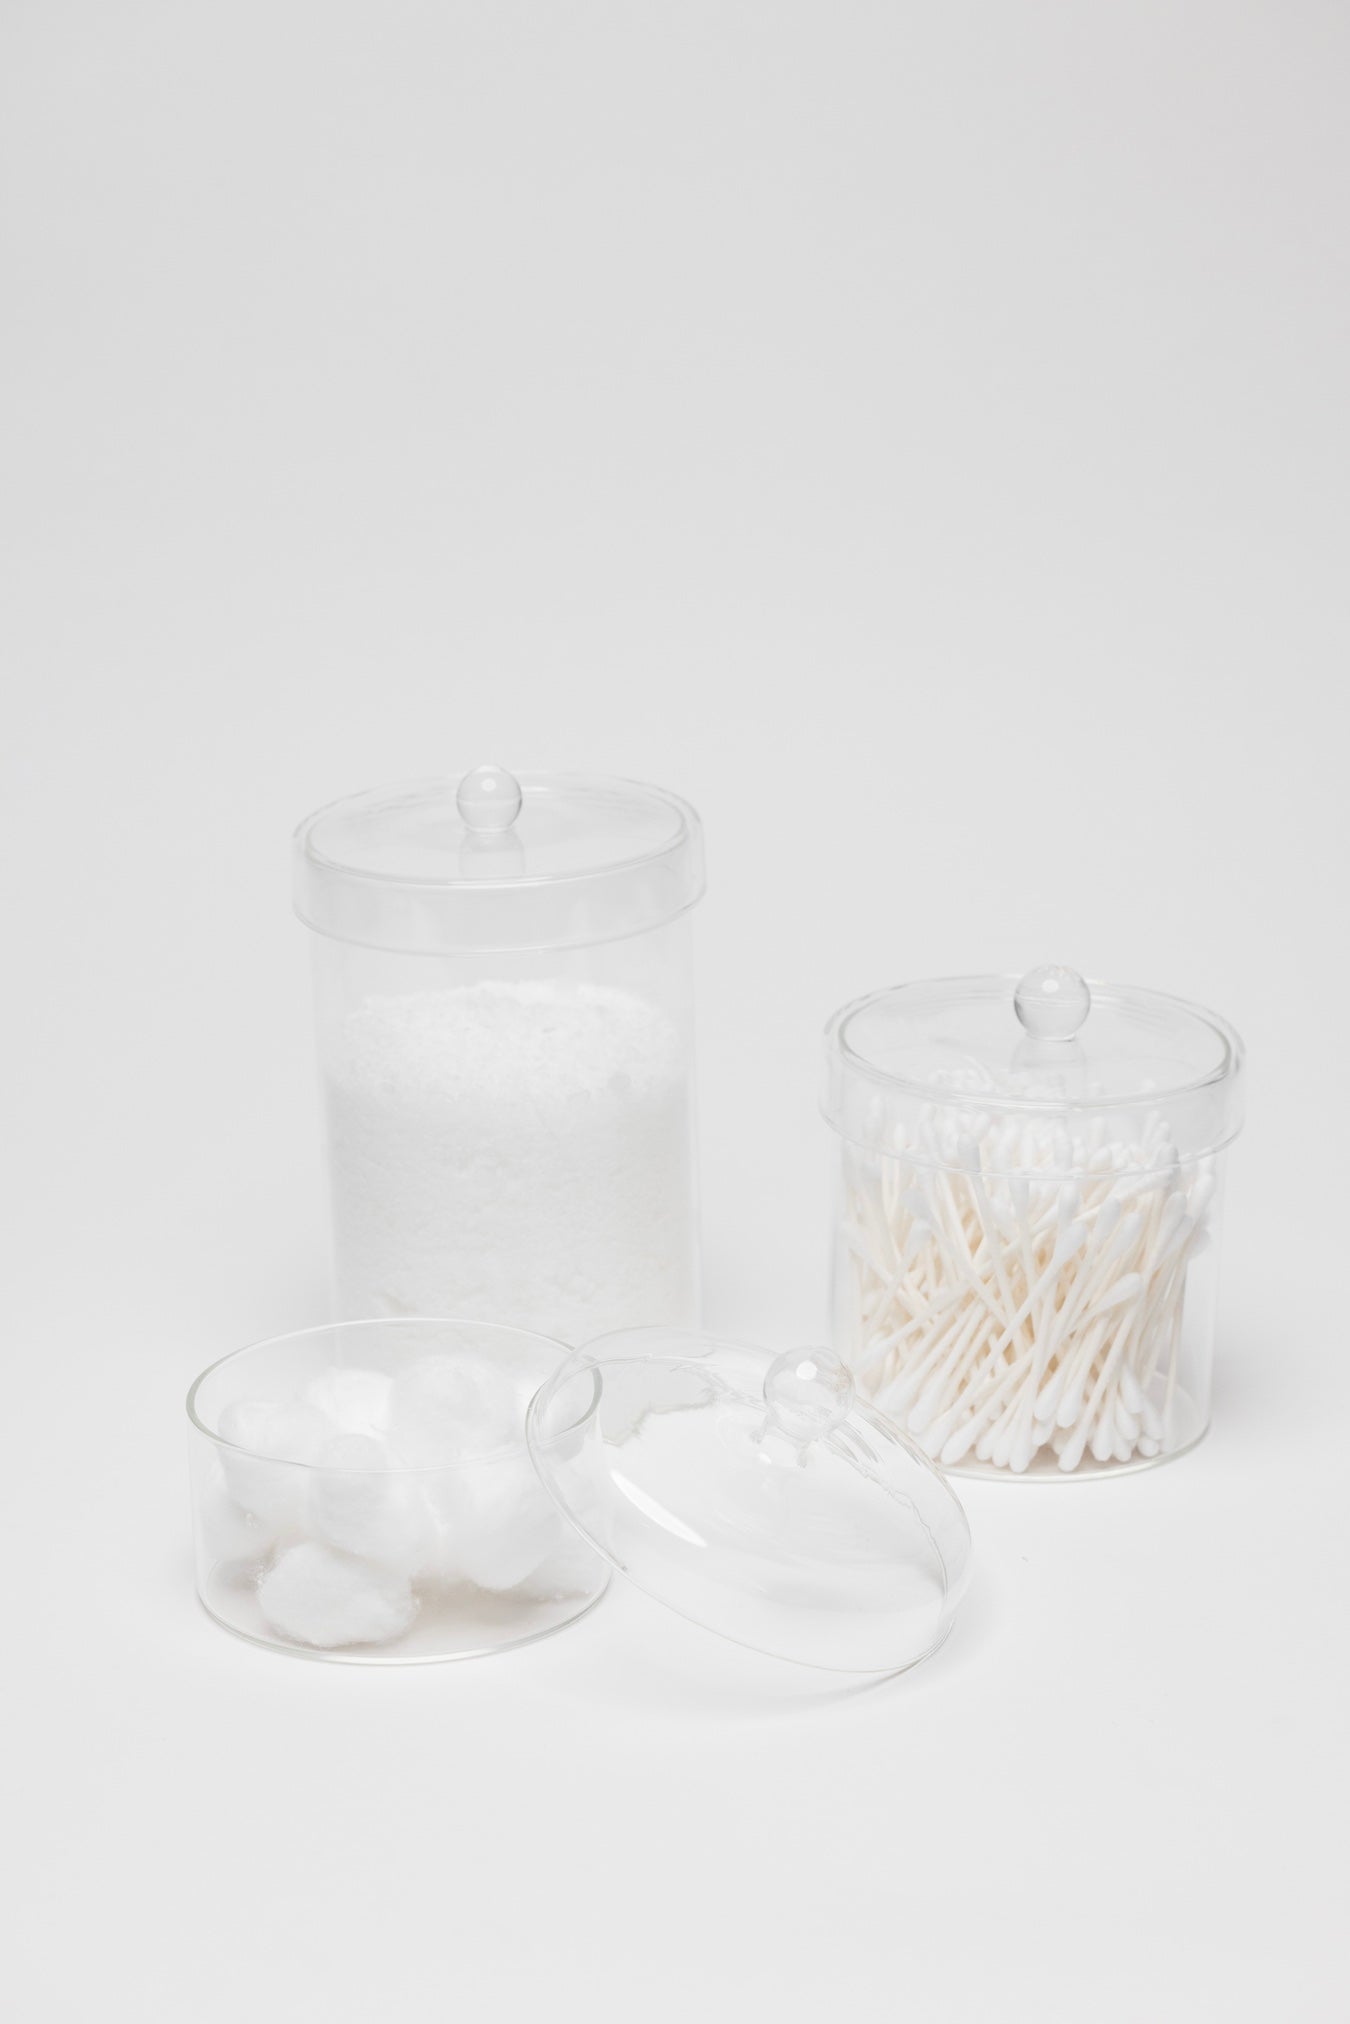 Vesta Glass Jar - 3 Sizes